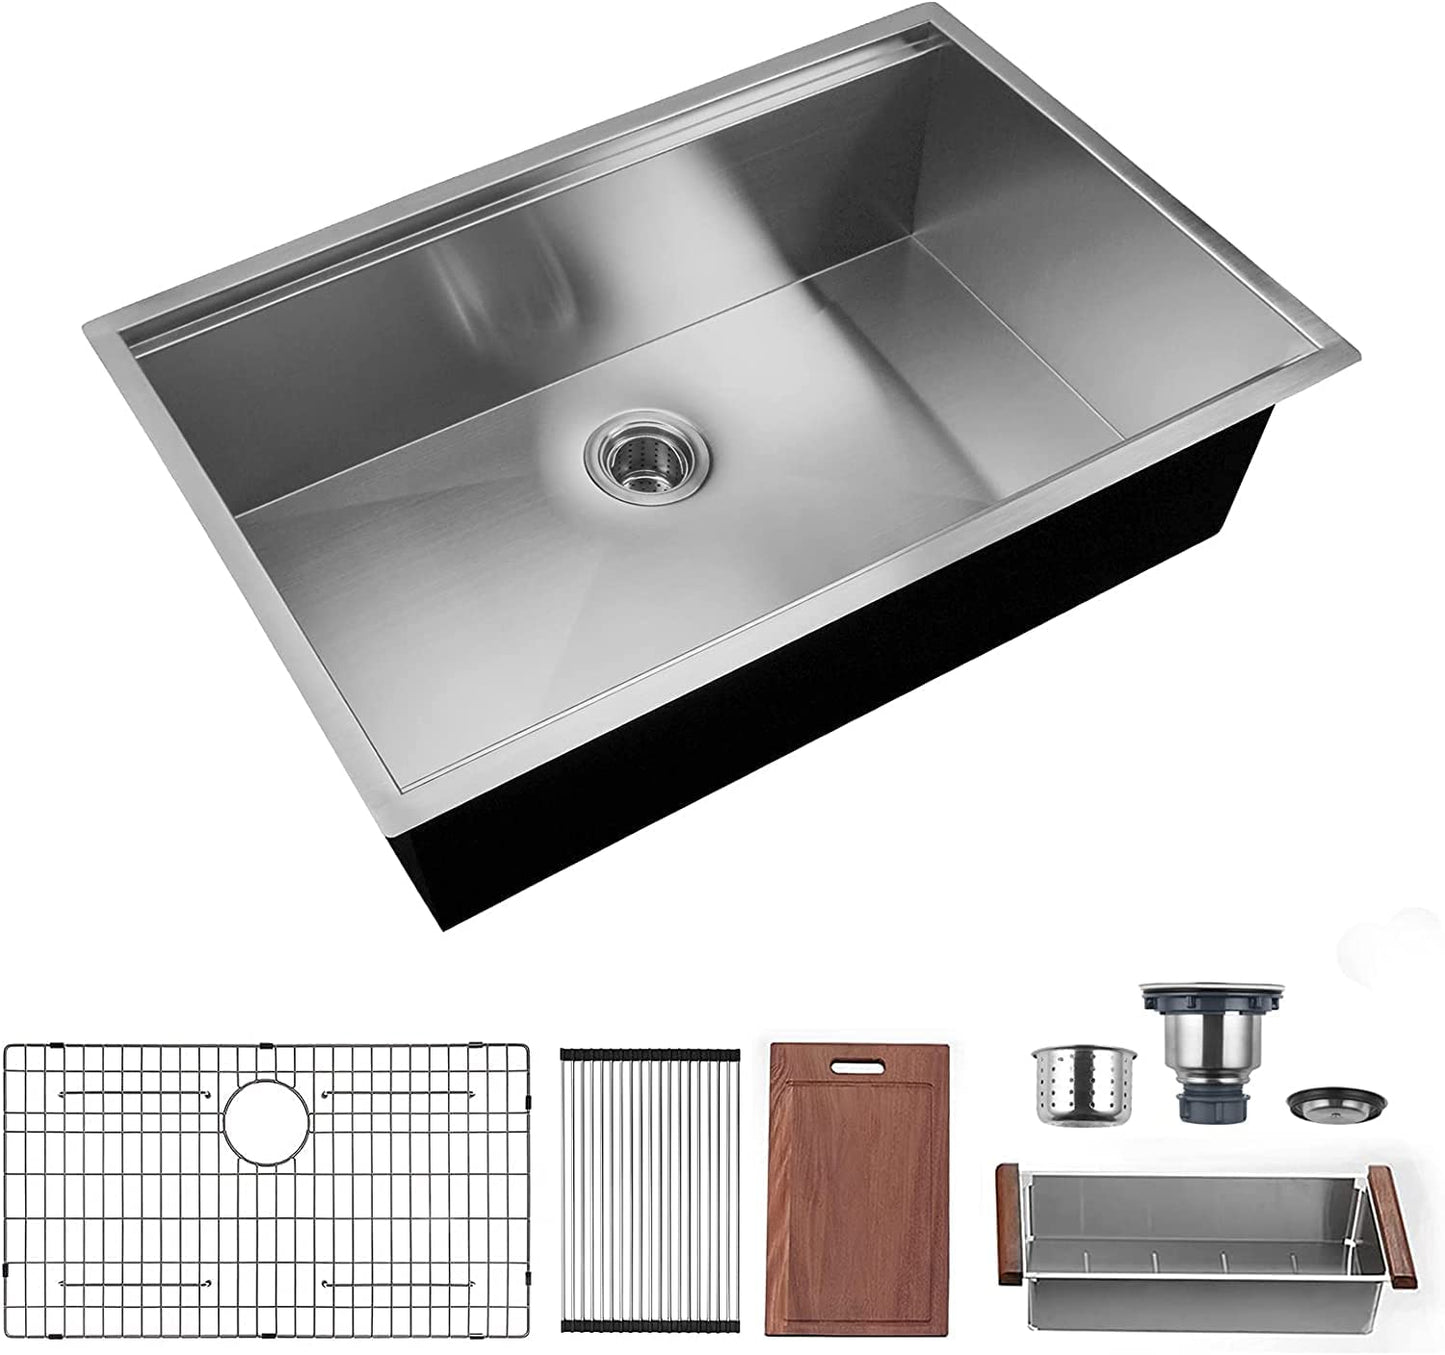 32 x 18 inch Undermount Workstation Sink, Stainless Steel Single Bowl  Sink 18 Gauge